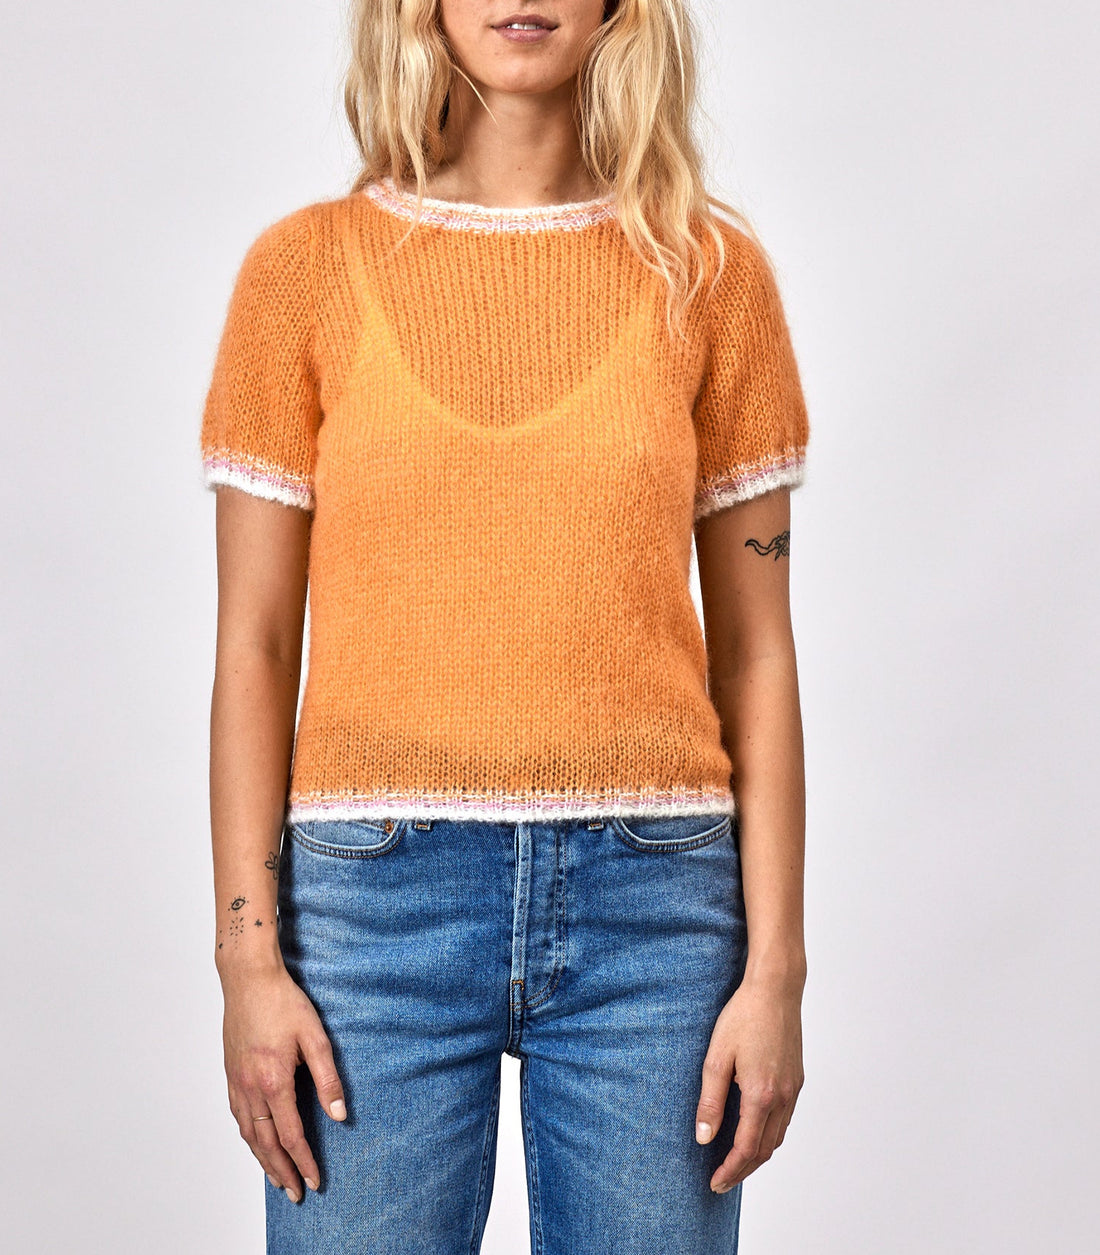 Aya knit orange off white/rose trim